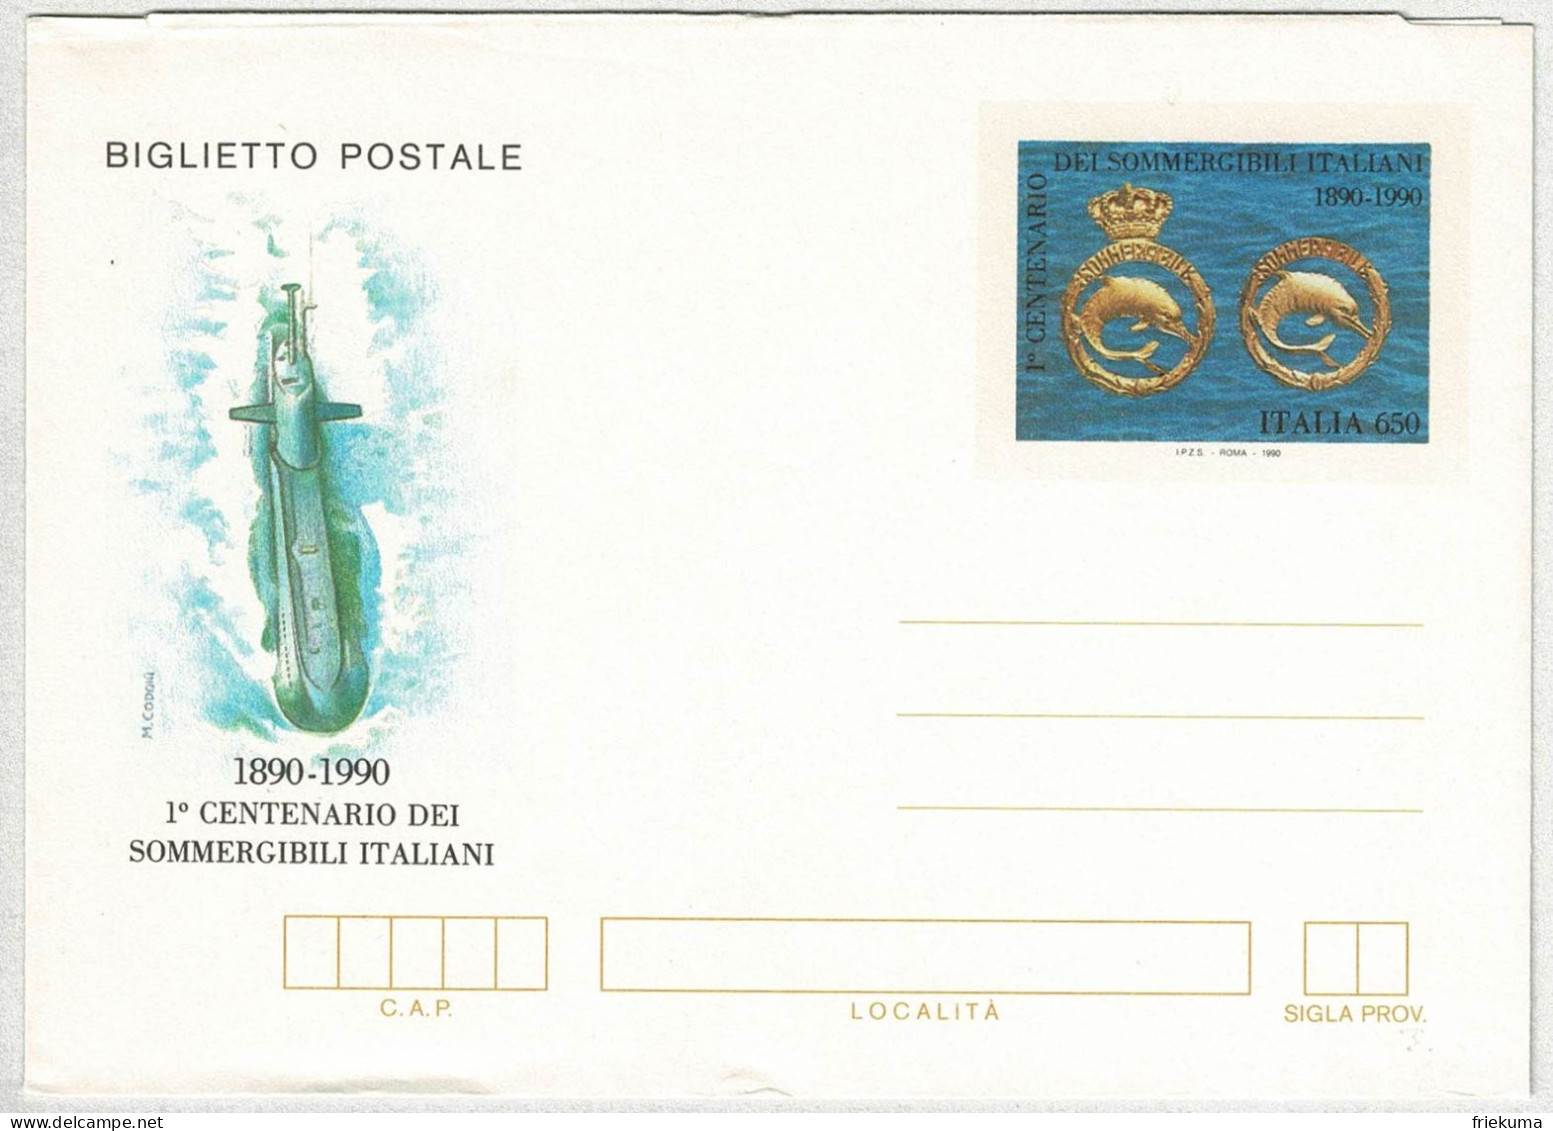 Italien / Italia 1990, Ganzsachen-Umschlag Sommergibili Italiani, U-Boote, Schmuck, Delphine - Submarinos